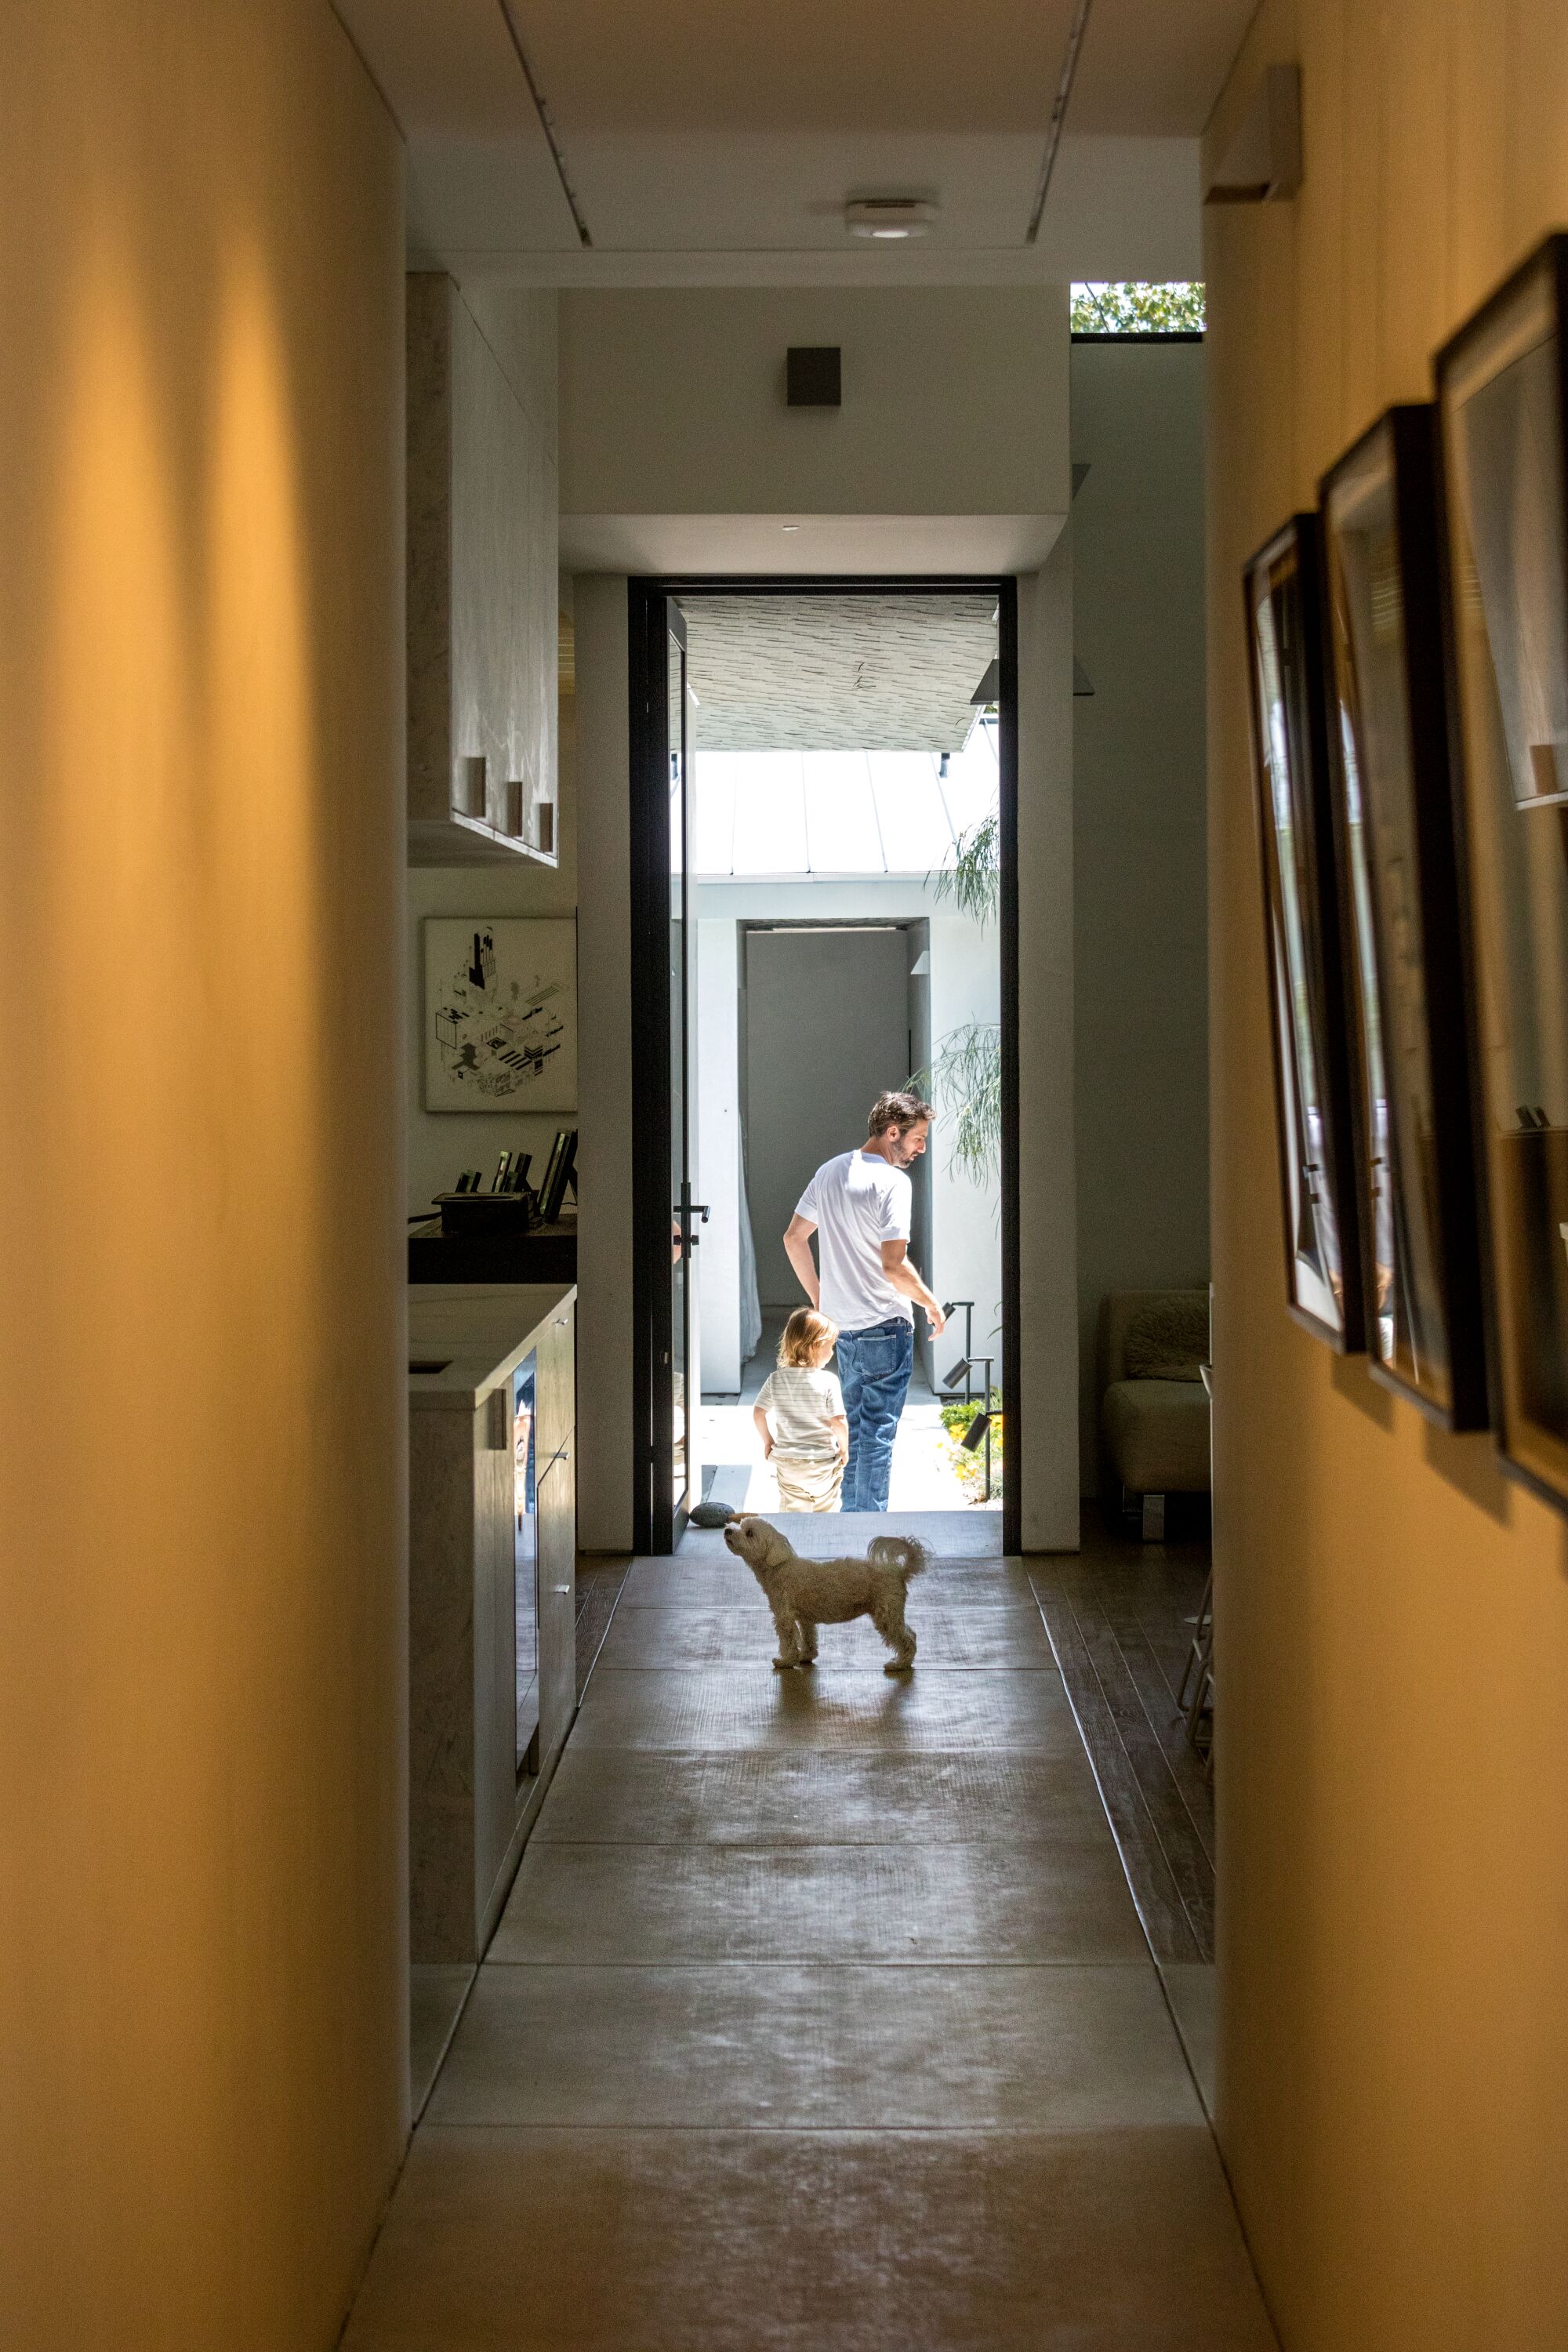 개가 집을 가로지르는 콘크리트 보도에 서 있다